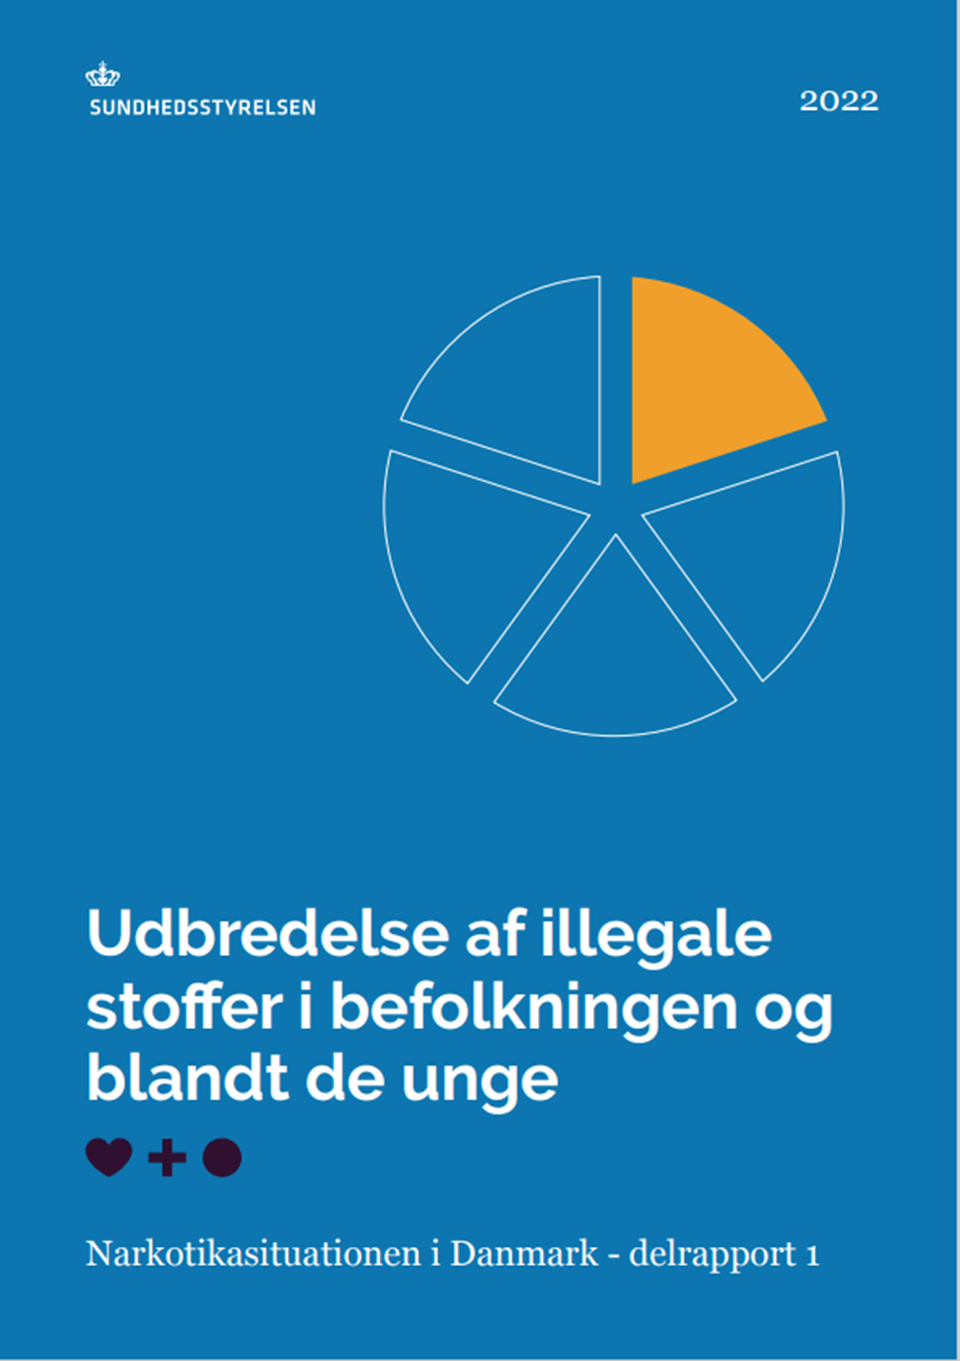 Høj eksponering tromme sko Udbredelse af illegale stoffer i befolkningen og blandt de unge -  Narkotikasituationen i Danmark - delrapport 1 (2022) - Sundhedsstyrelsen